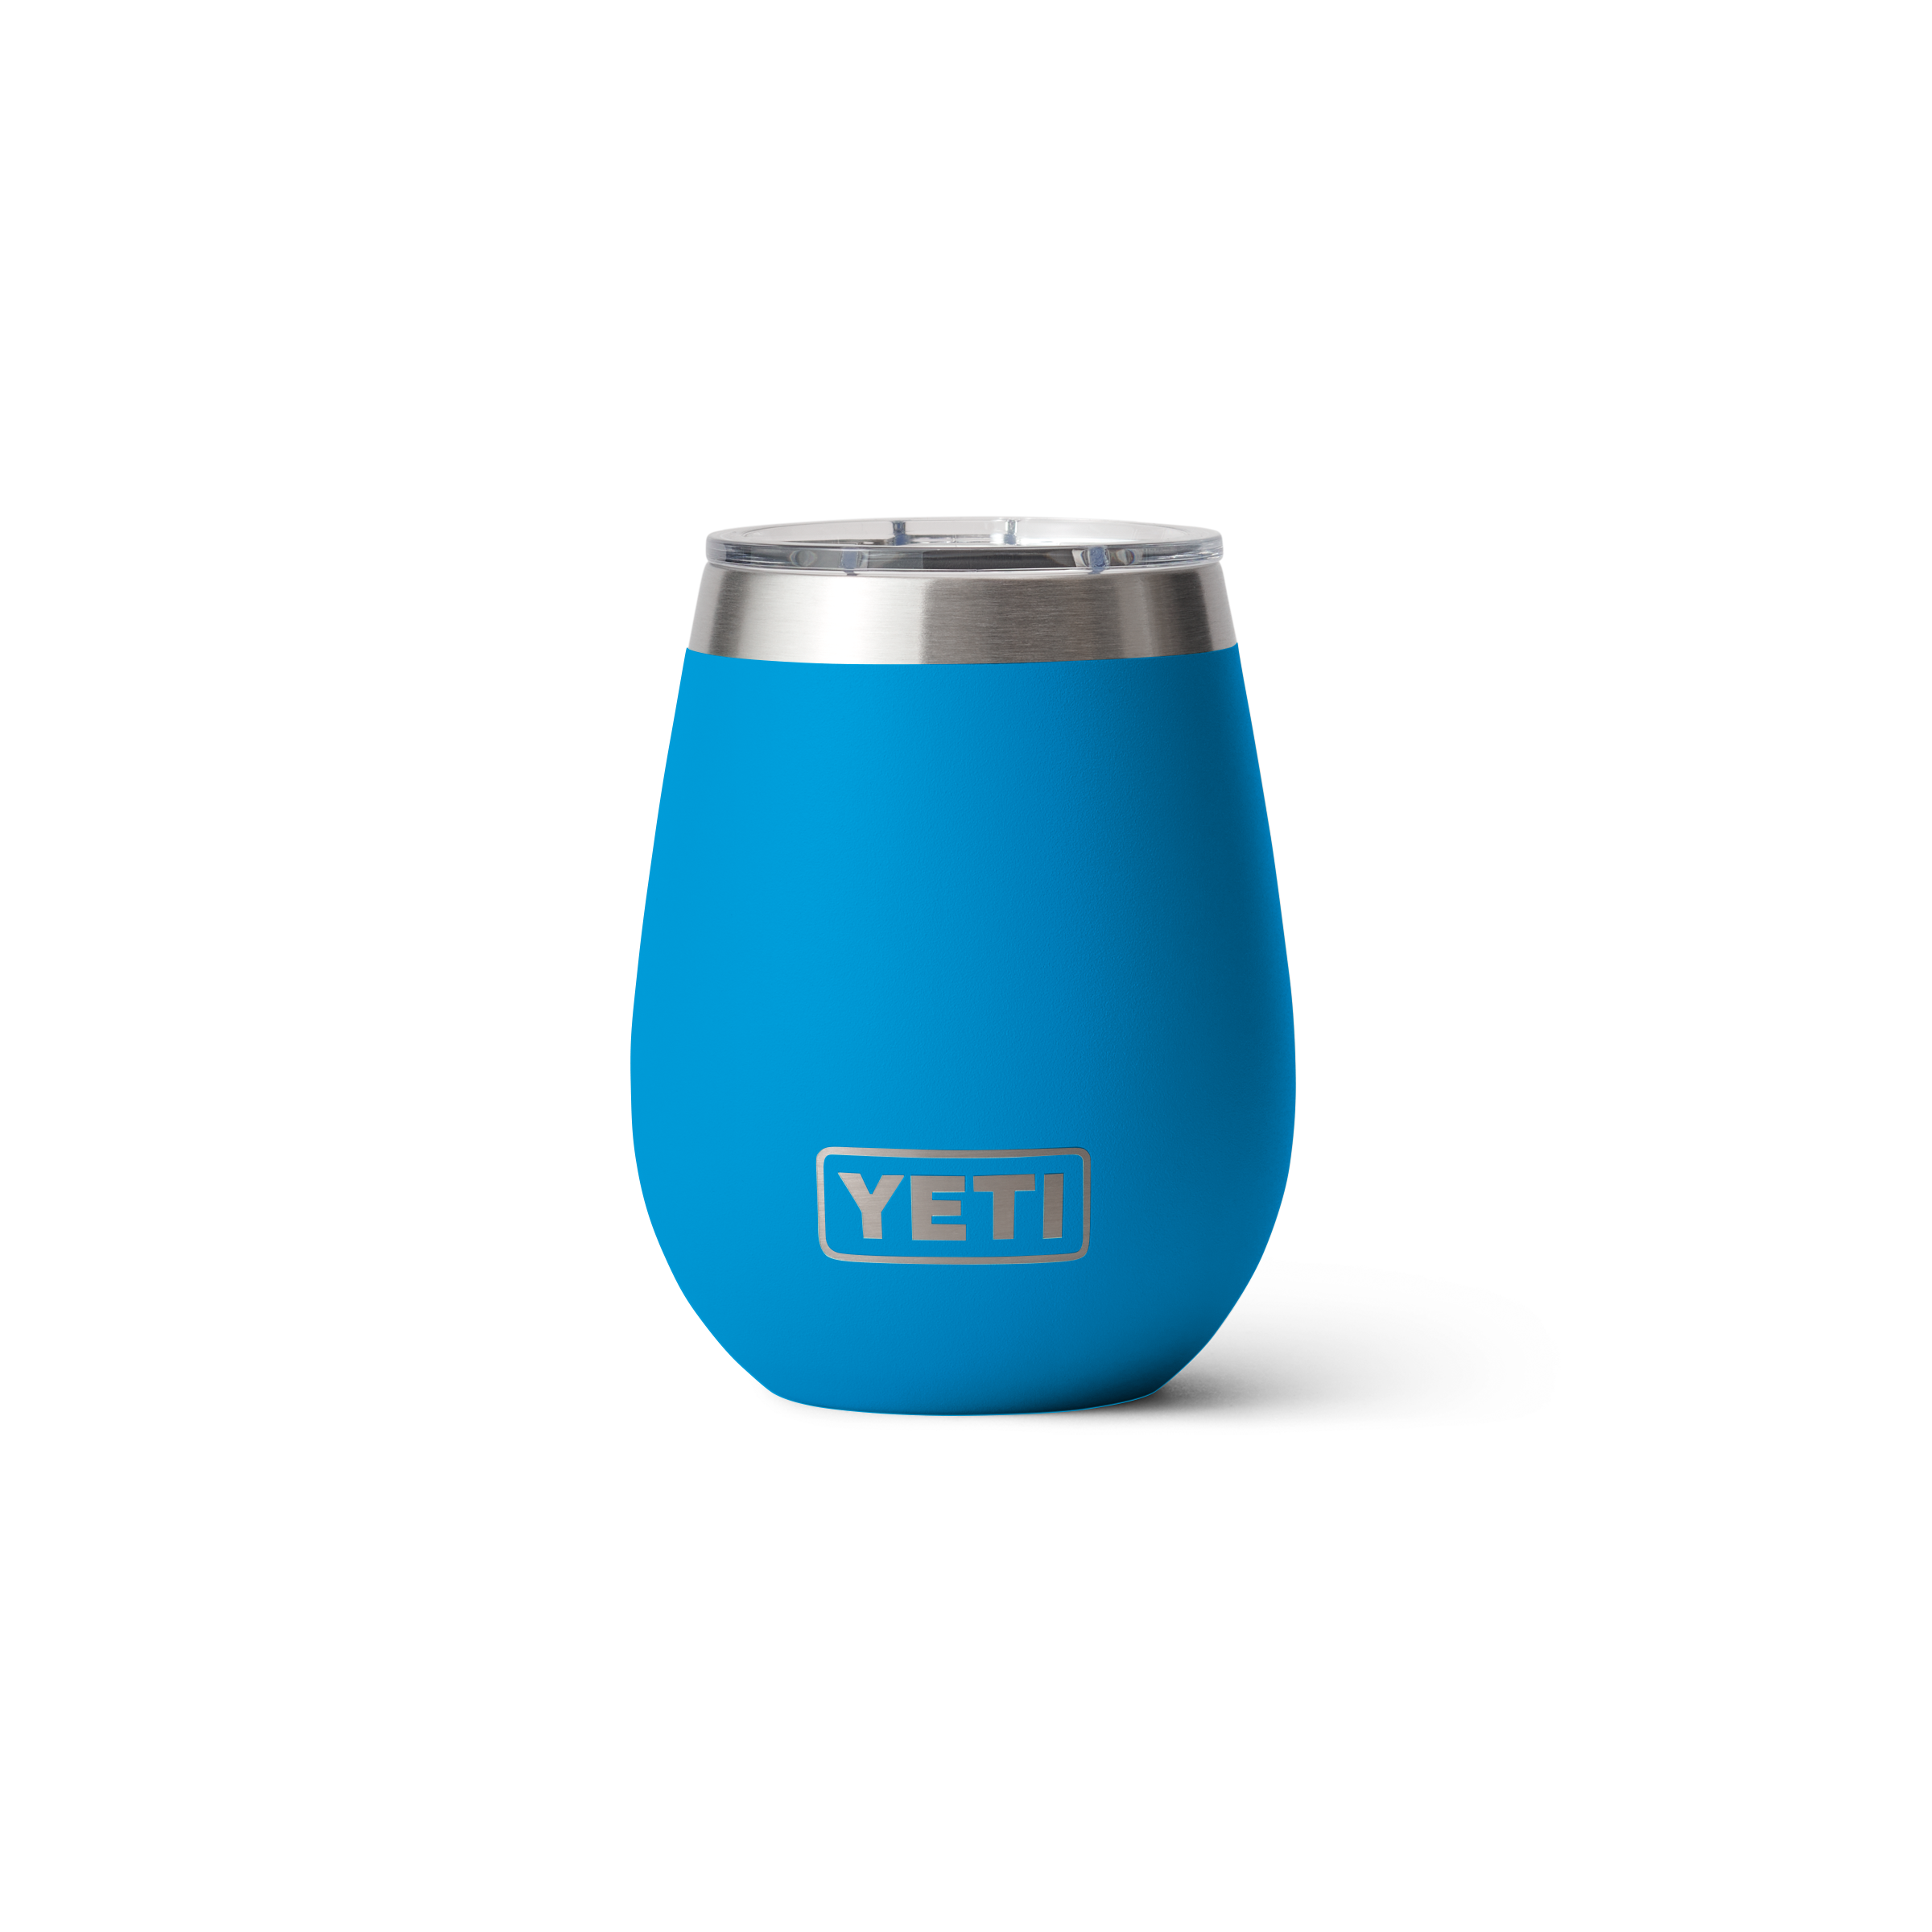 【取寄用品】YETI 10oz Beer & Barware 2個set (単品購入可能） バーベキュー・調理用品